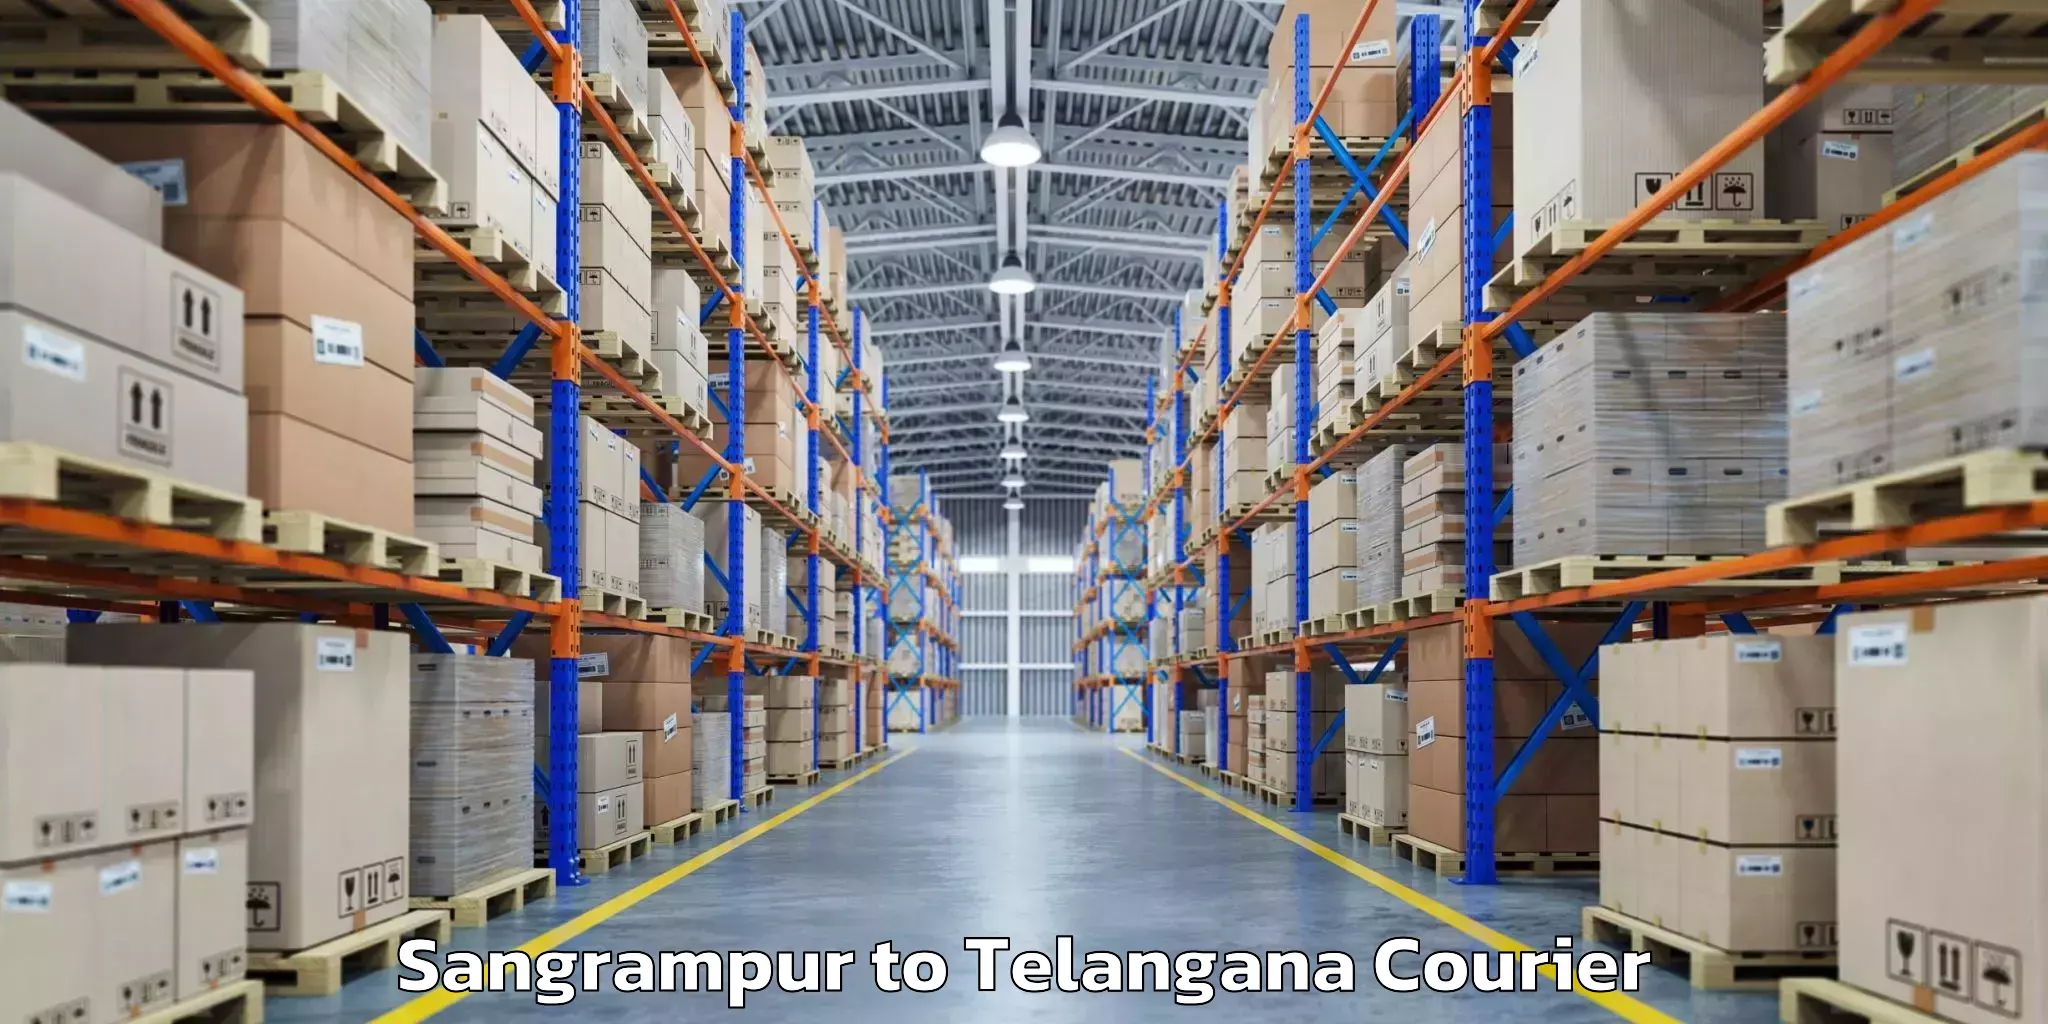 Baggage courier optimization Sangrampur to Gudur Warangal